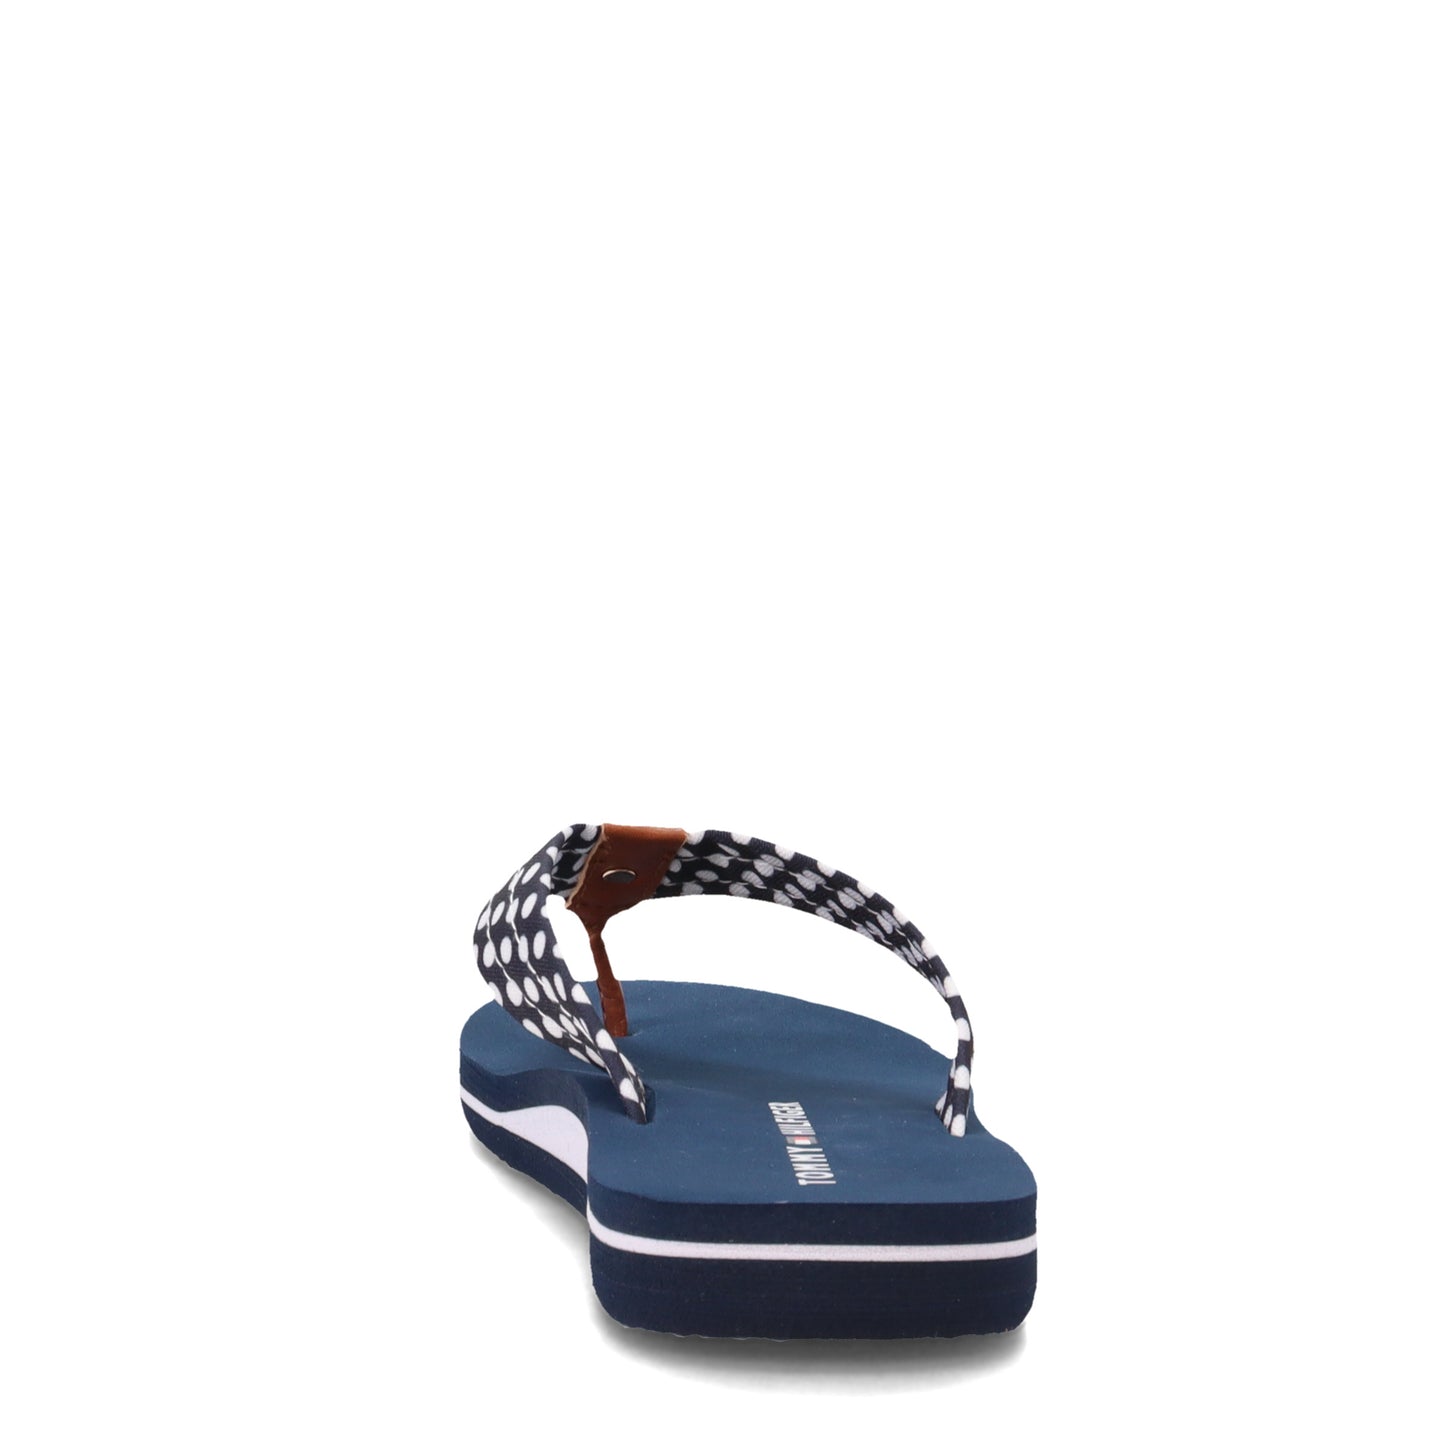 Peltz Shoes  Women's Tommy Hilfiger Cazax Sandal NAVY CAZAX-DBL01